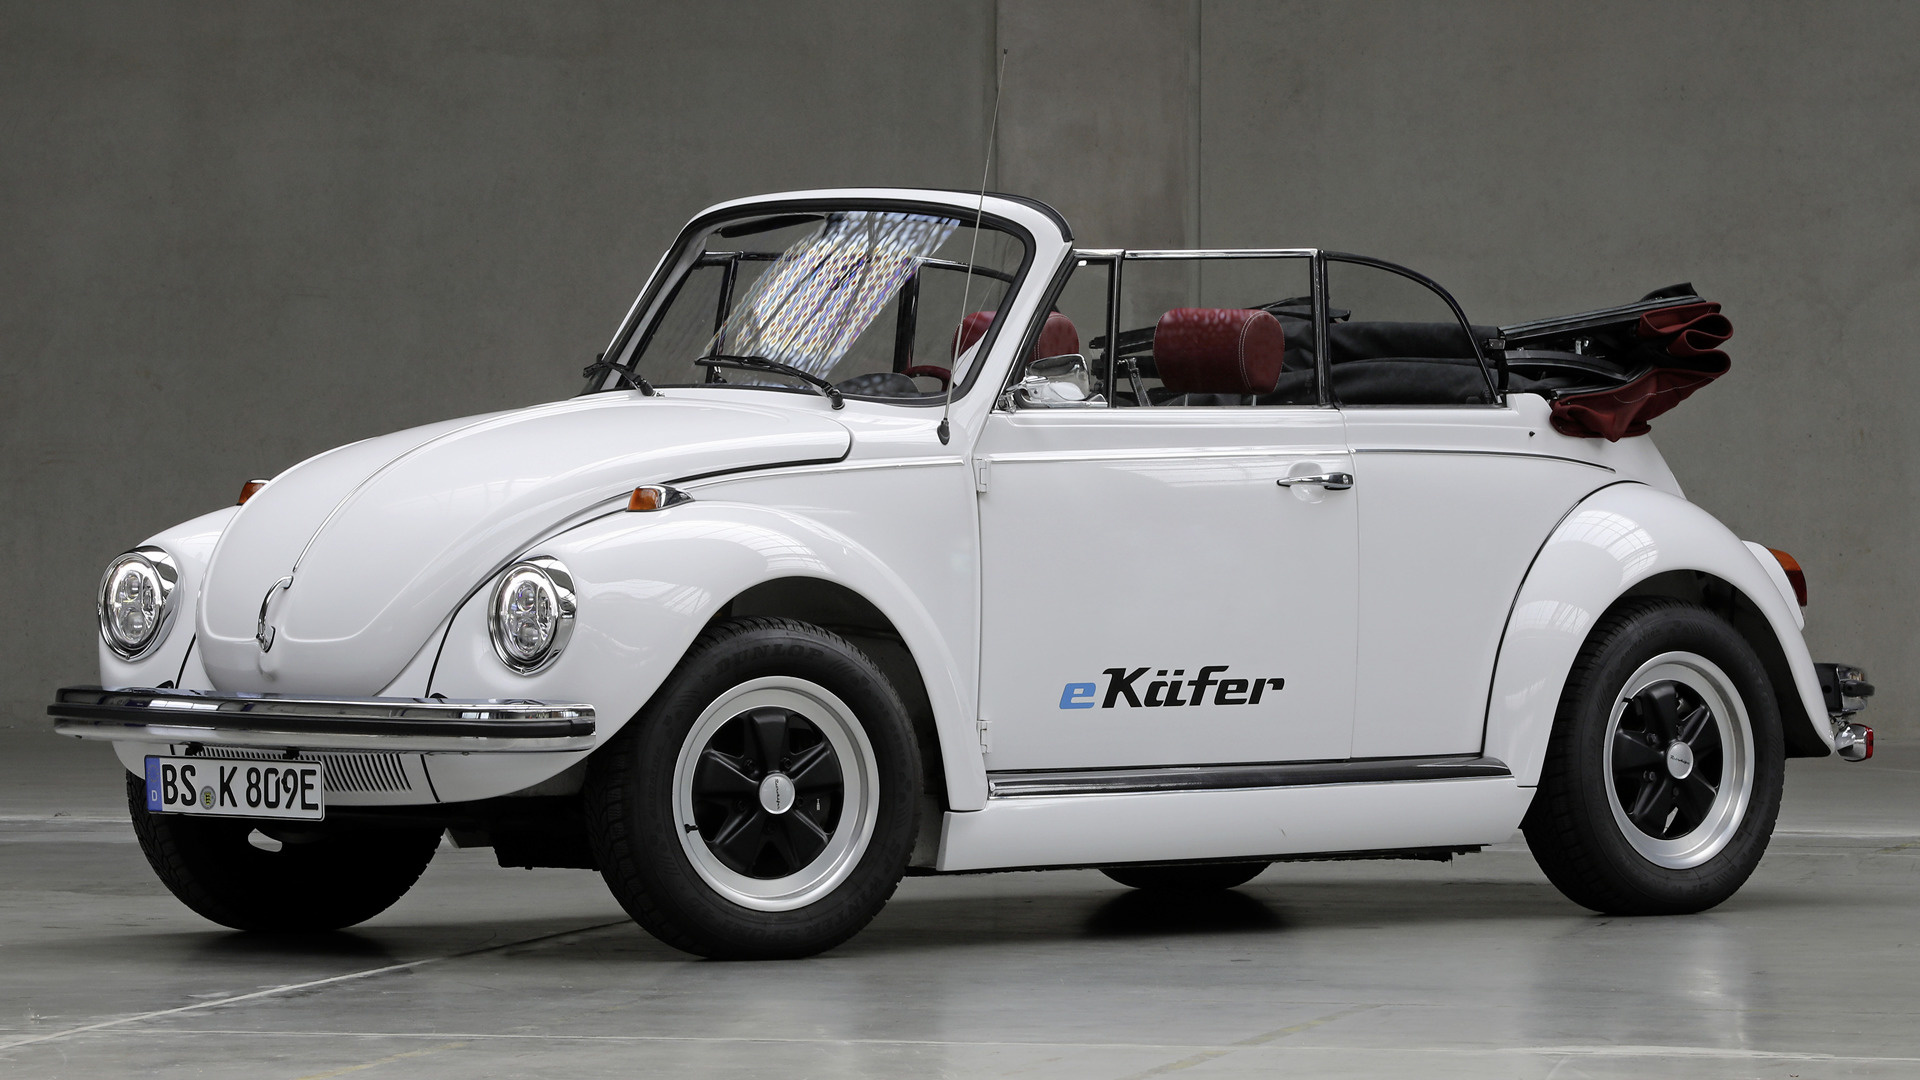 Volkswagen E-KaFer Wallpapers